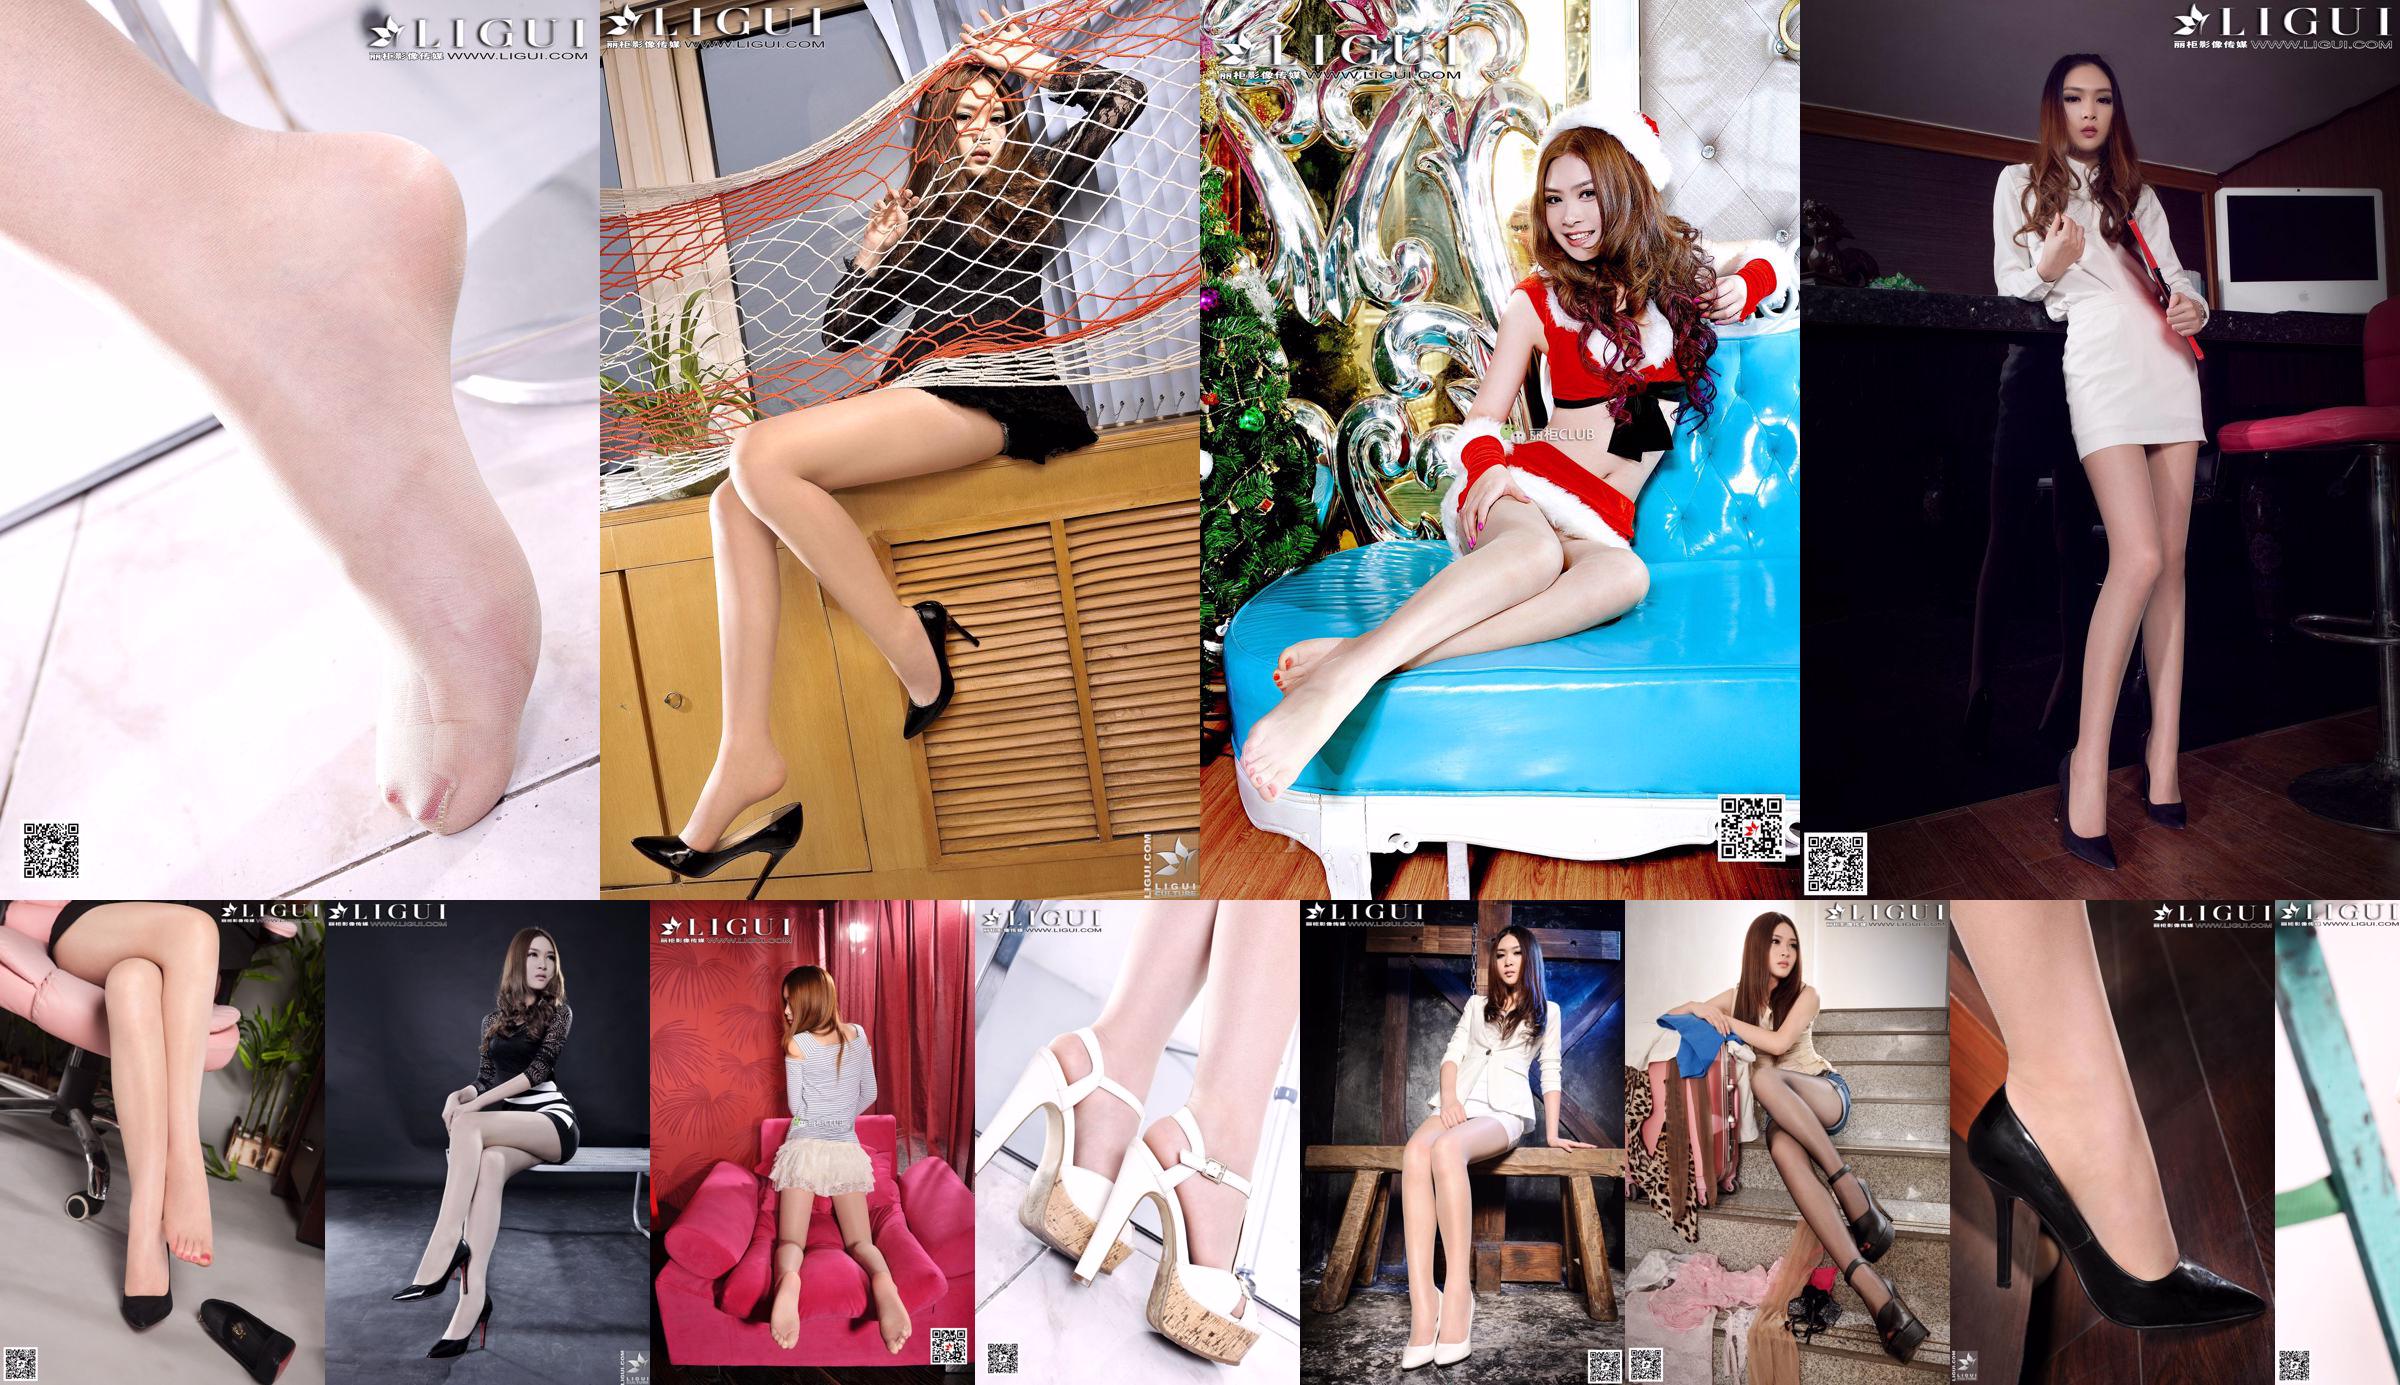 [丽 柜 LiGui] "Office Silky Foot" della modella Yoona Opere complete di belle gambe e immagine fotografica del piede di giada No.51a1a5 Pagina 5